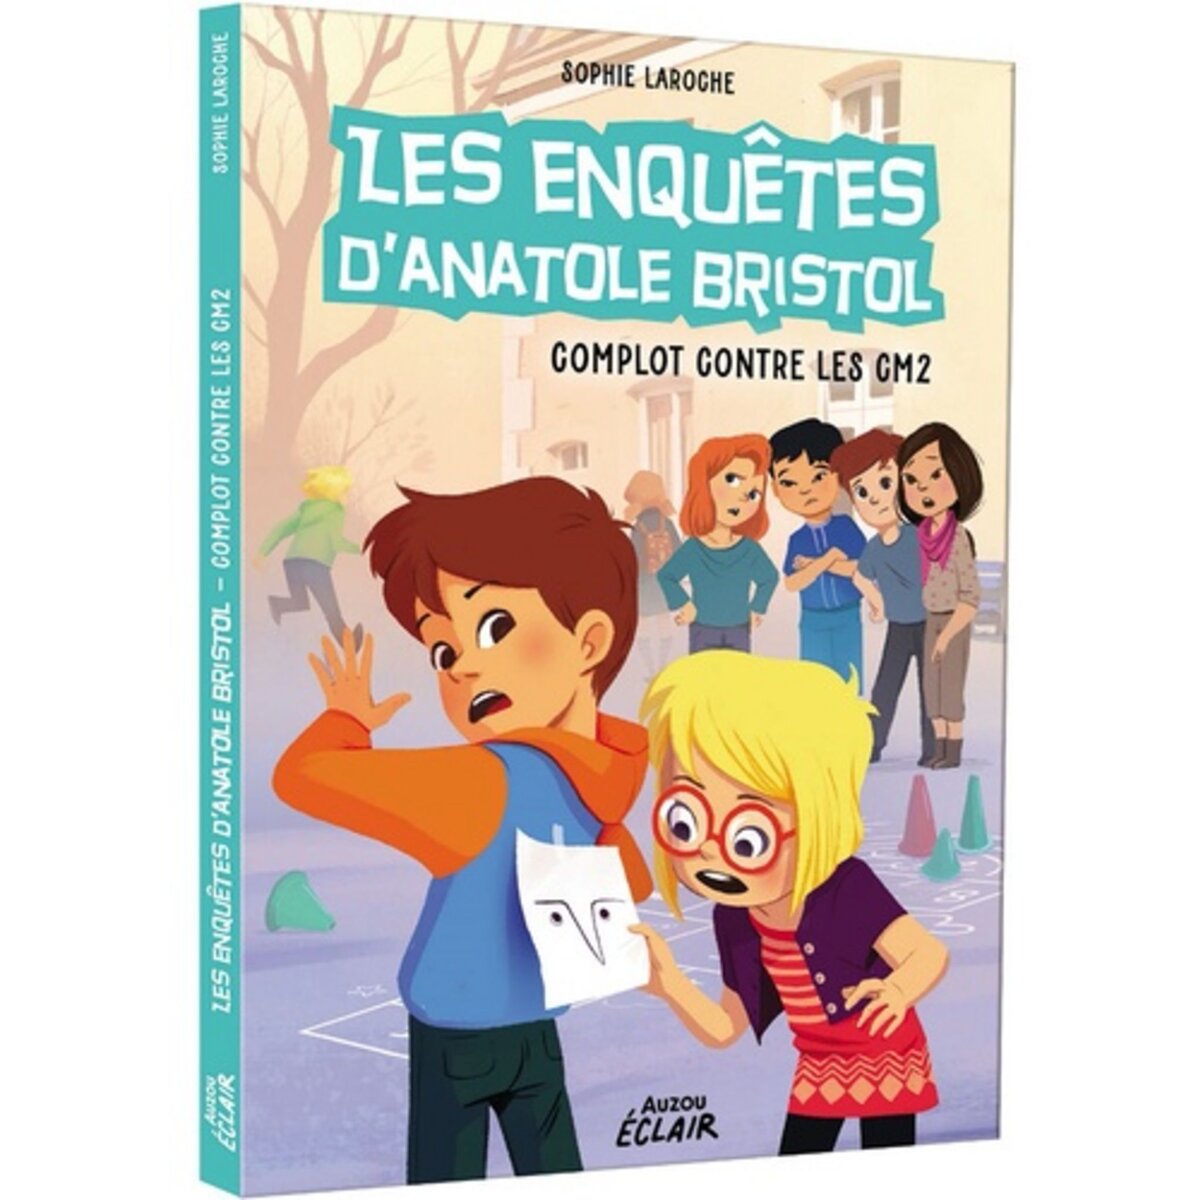  LES ENQUETES D'ANATOLE BRISTOL TOME 13 : COMPLOT CONTRE LES CM2, Laroche Sophie